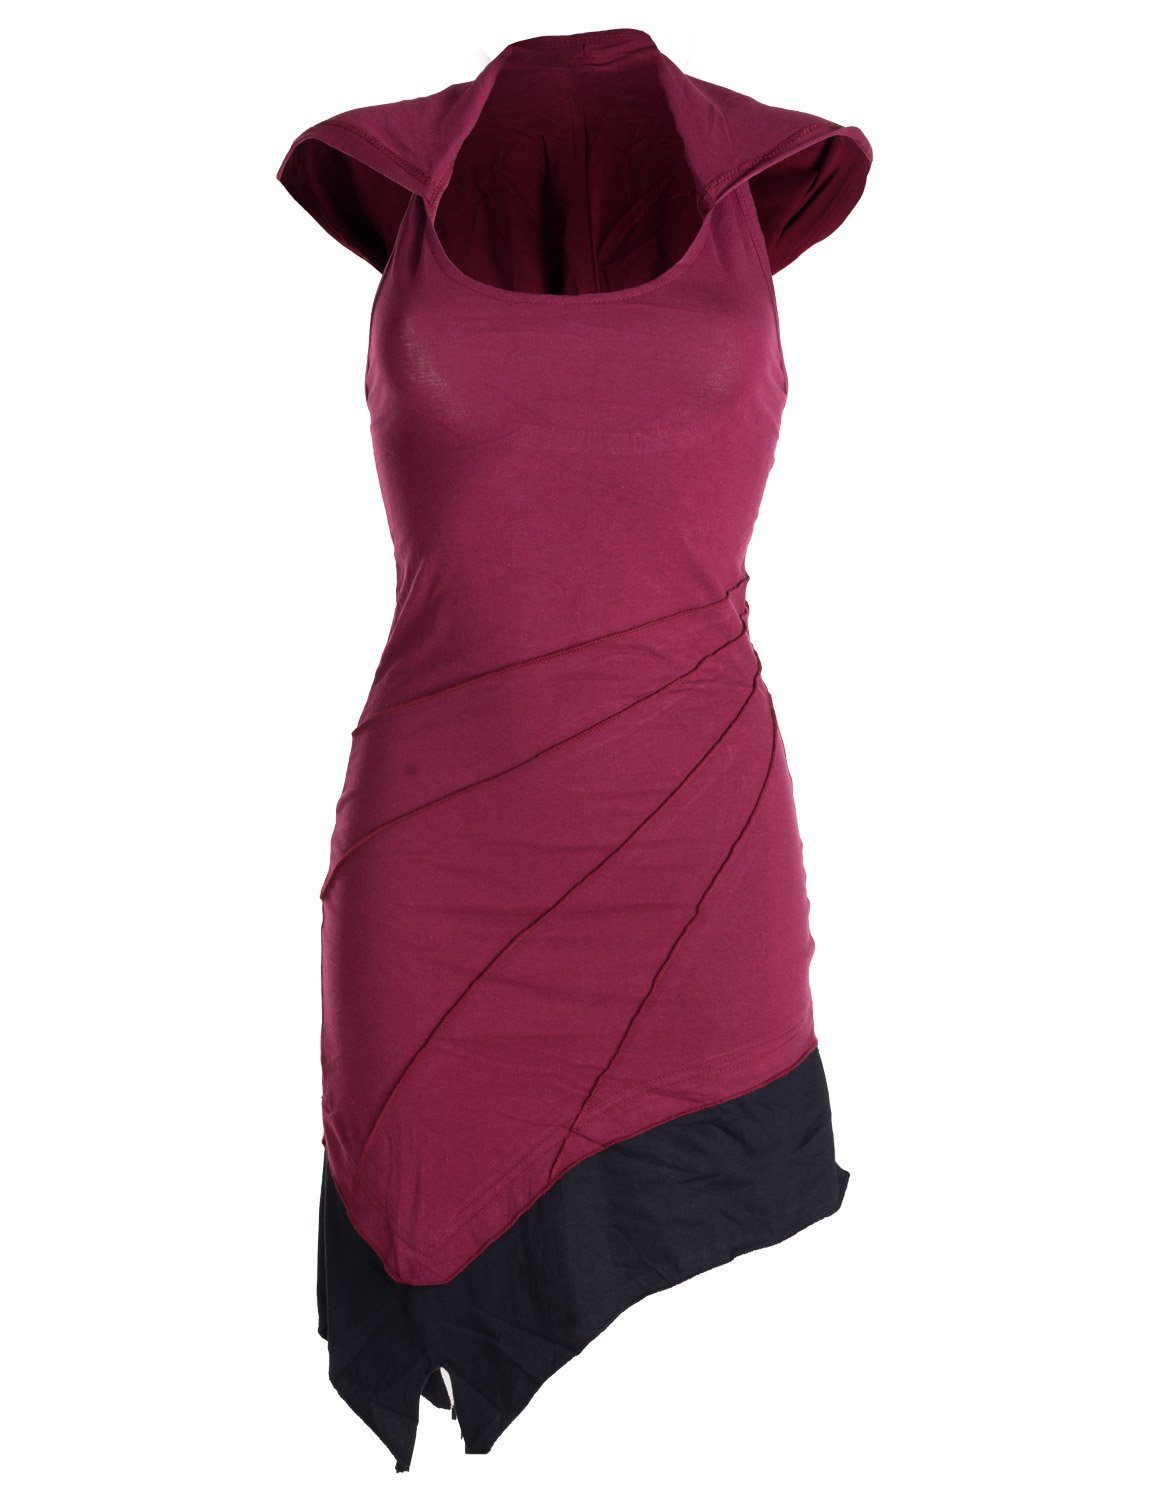 Vishes Neckholderkleid Mini Kleid Neckholder zweifarbig Zipfelkleid Hippie, Goa, Boho Elfen Style dunkelrot